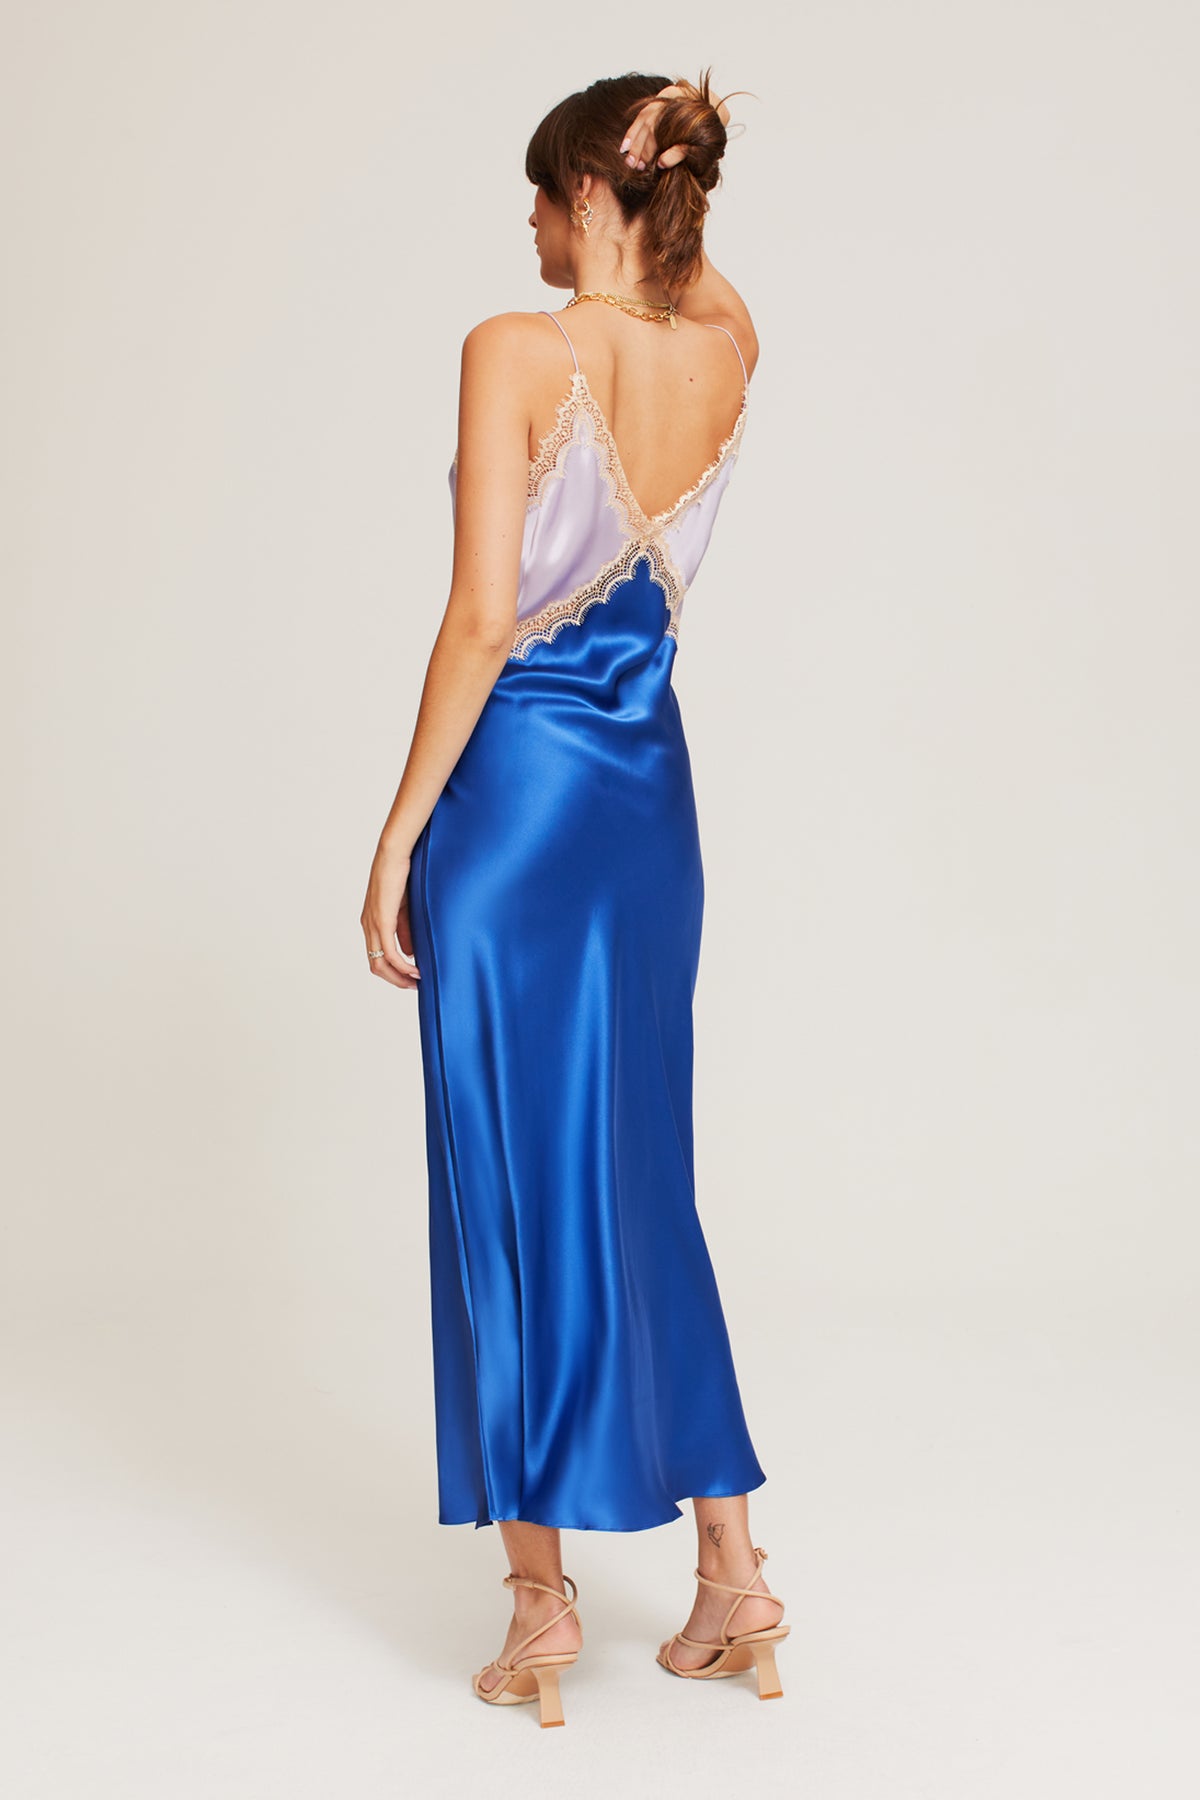 Sadie Dress in Lilac/Blue - 100% Silk | Ginia RTW